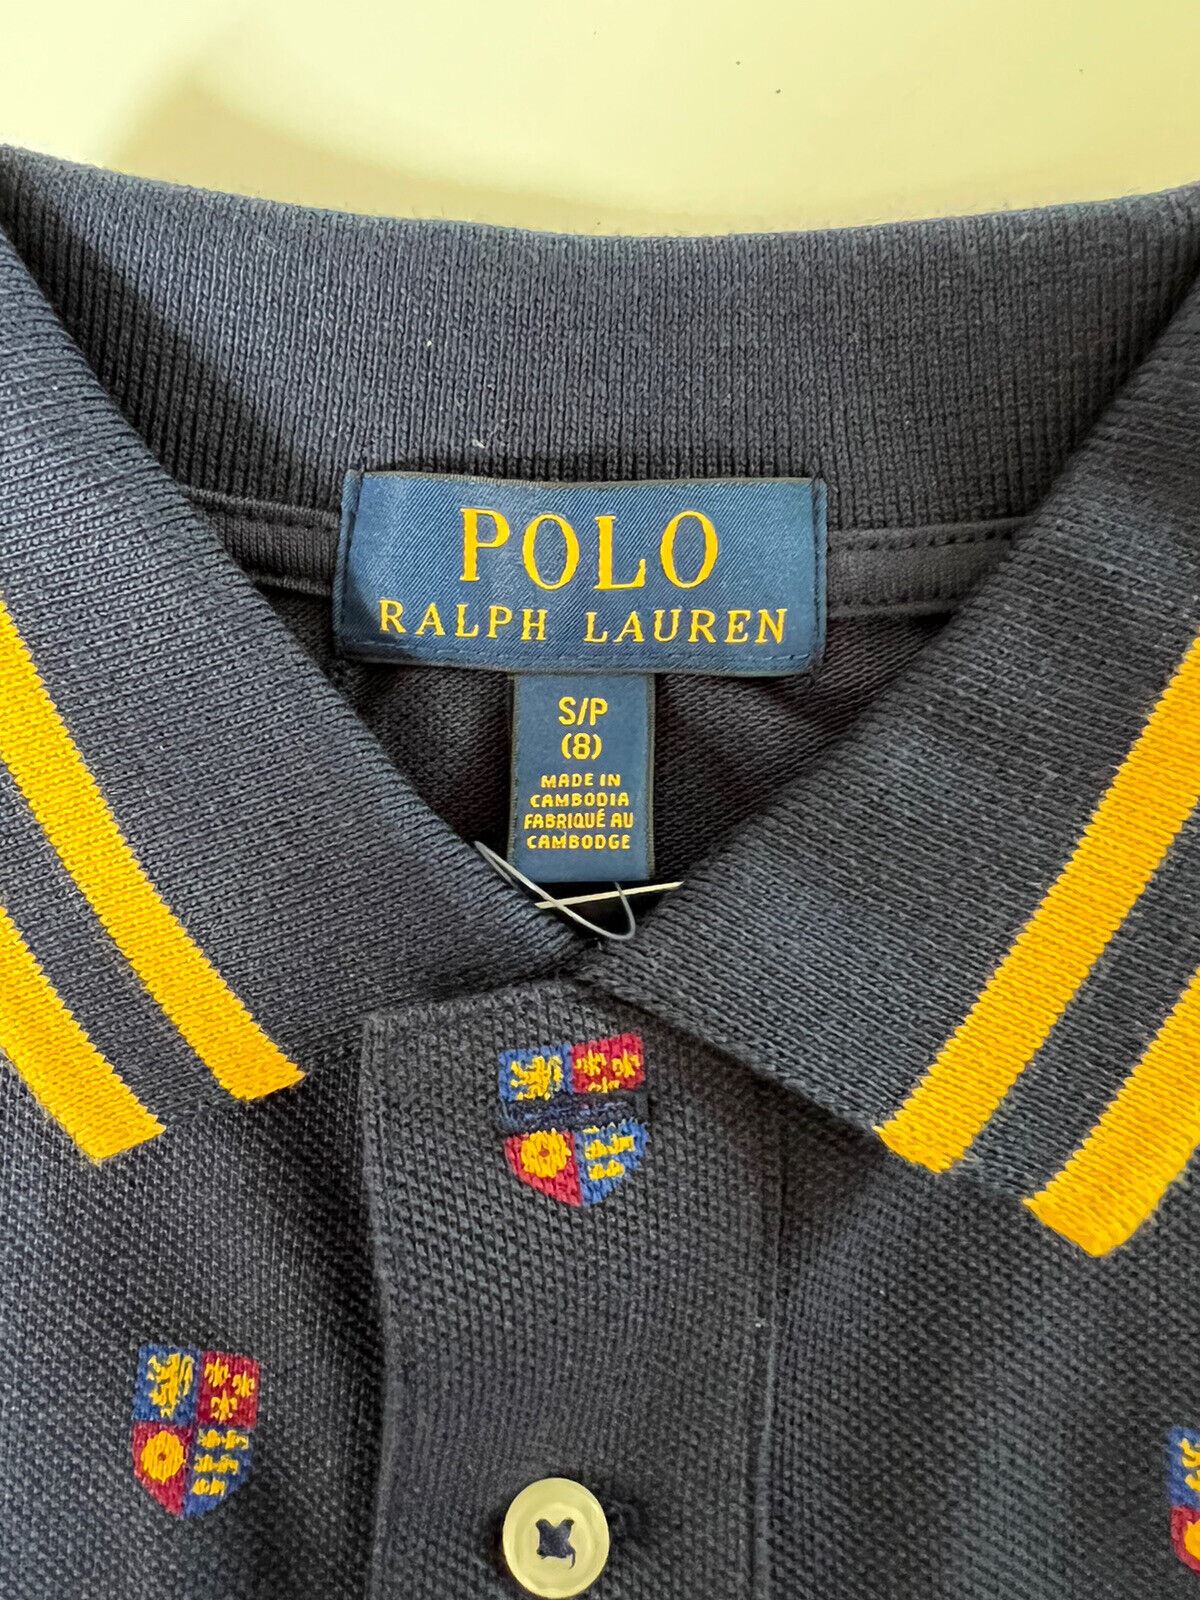 Neu mit Etikett Polo Ralph Lauren Jungen-Poloshirt, Blau, Größe S (8) 